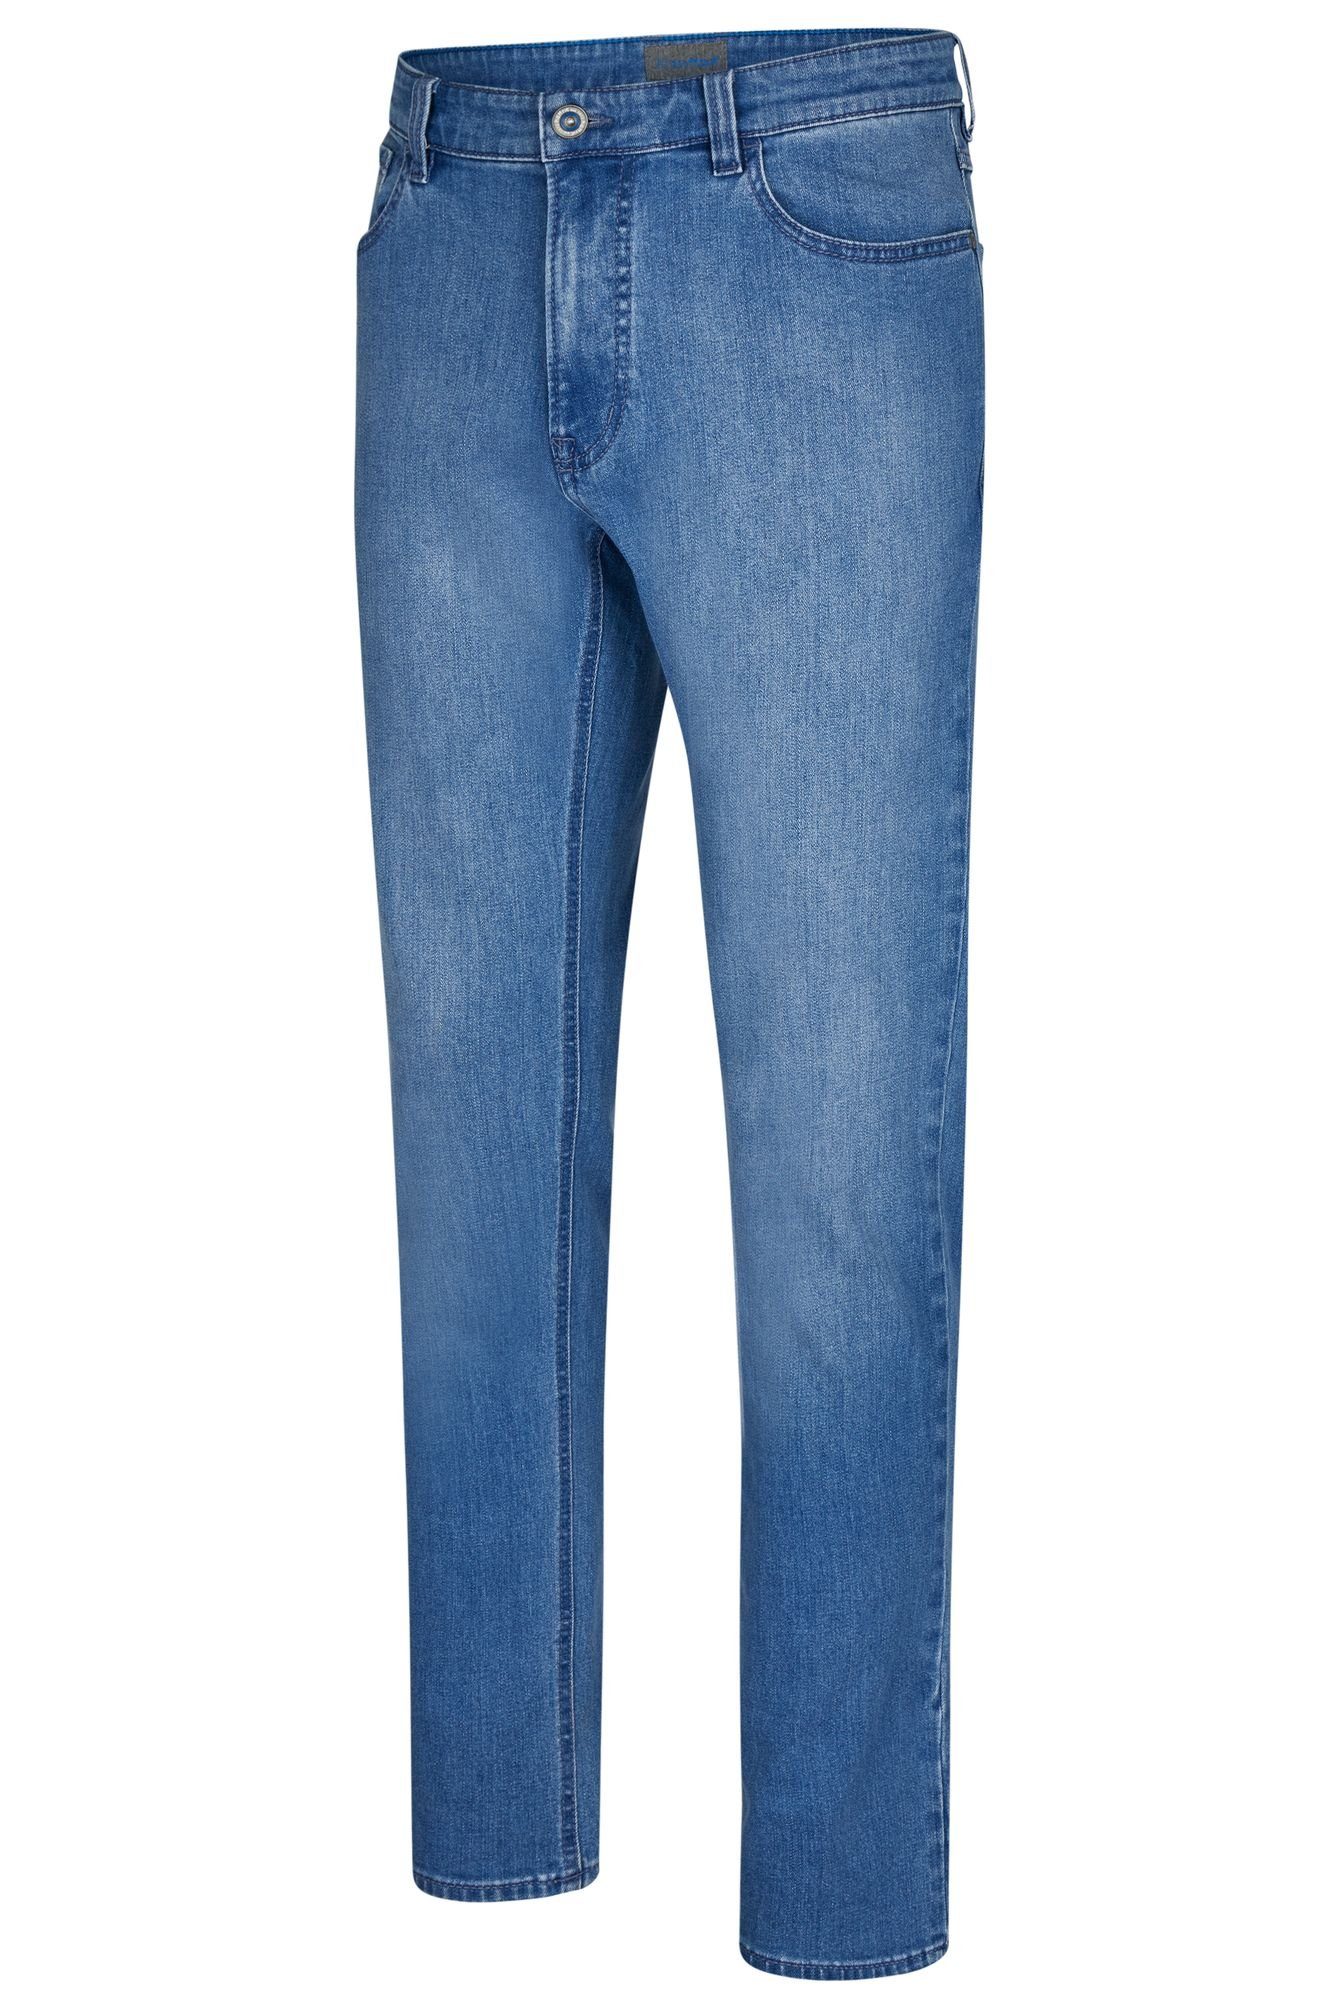 Hattric 5-Pocket-Jeans 688865-9273 blau (44)